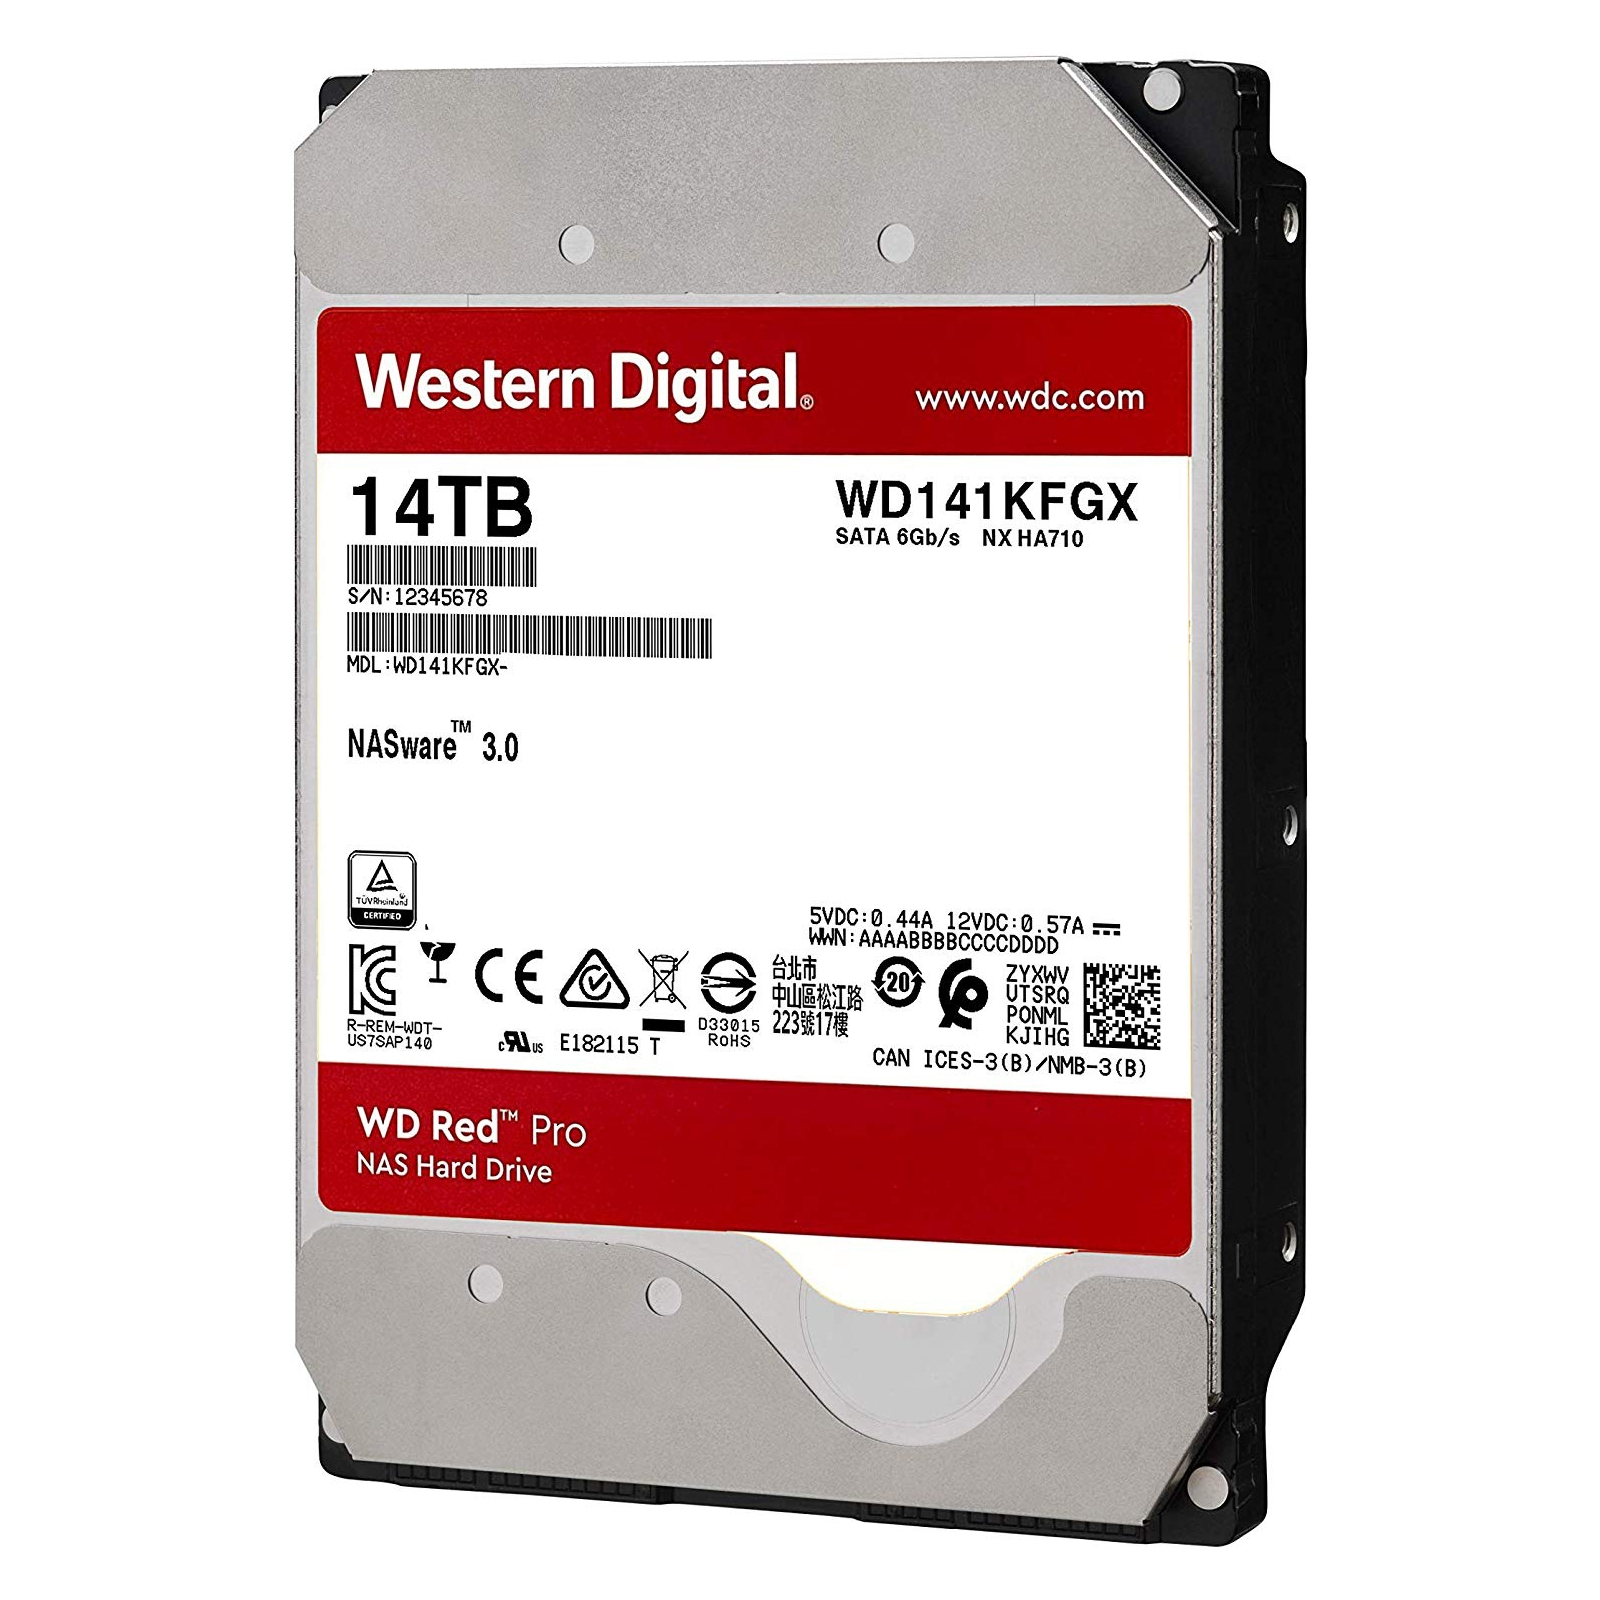 Жесткий диск 3.5" 18TB WD (WD181KFGX) изображение 2